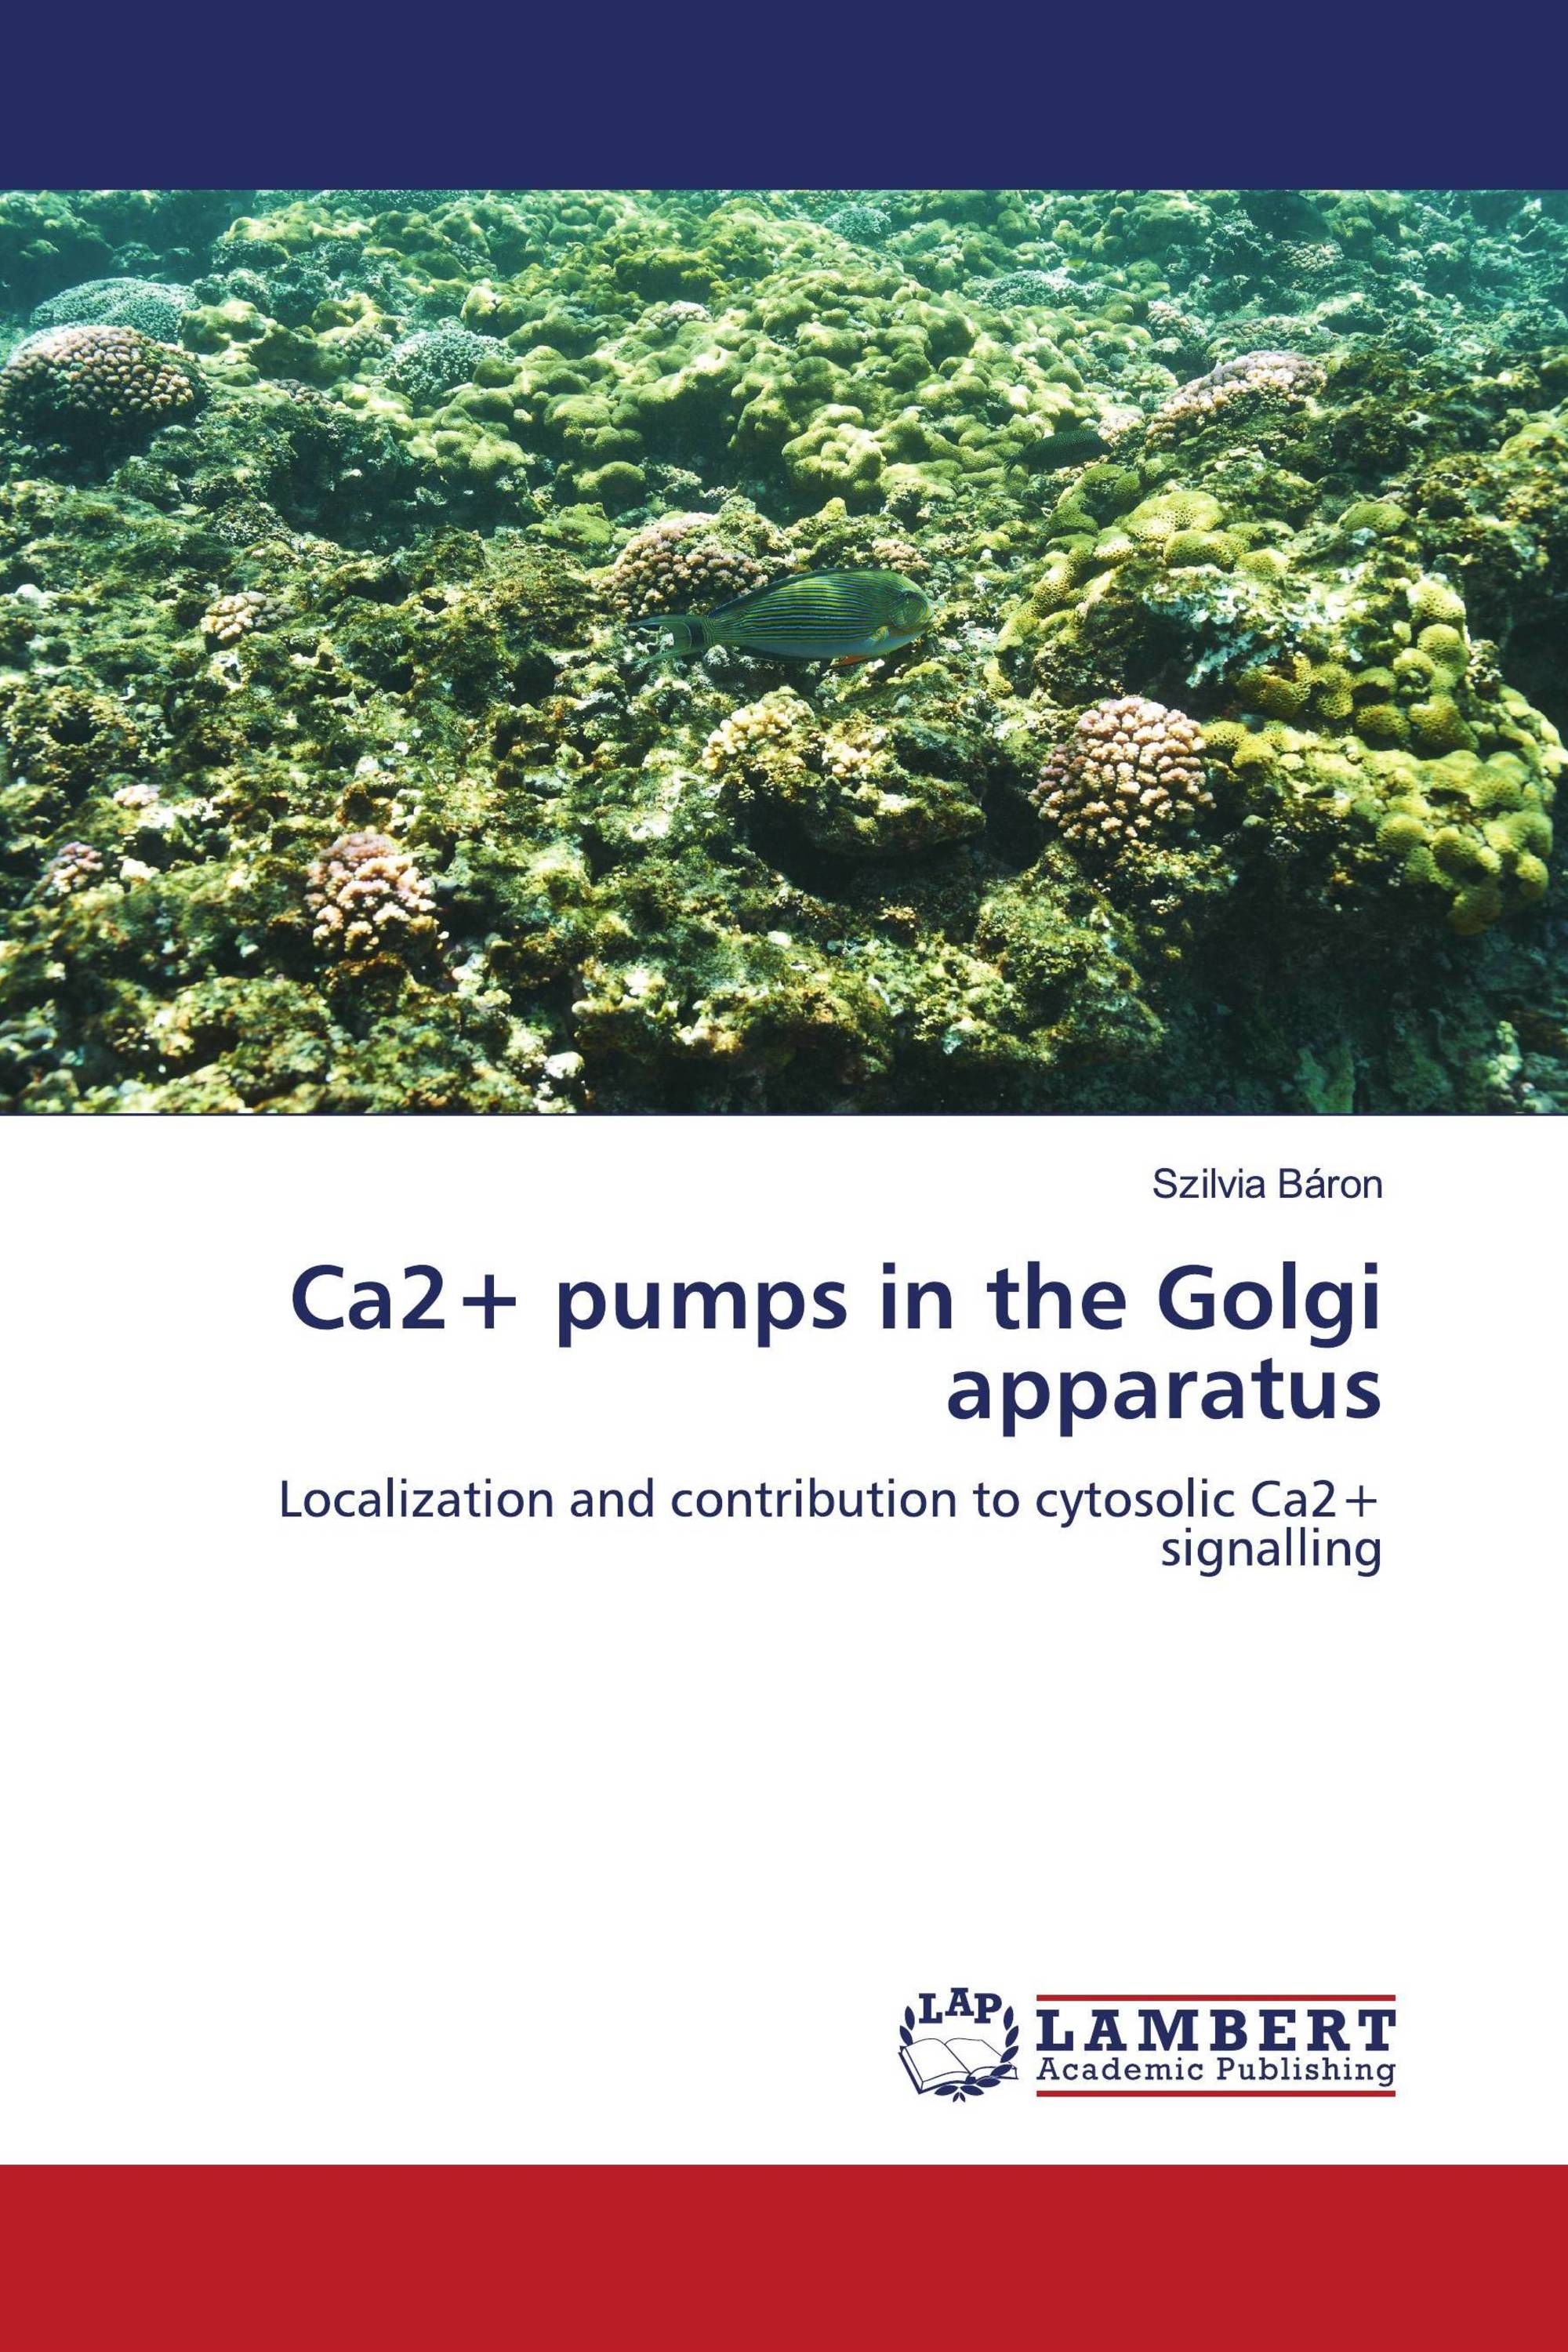 Ca2+ pumps in the Golgi apparatus